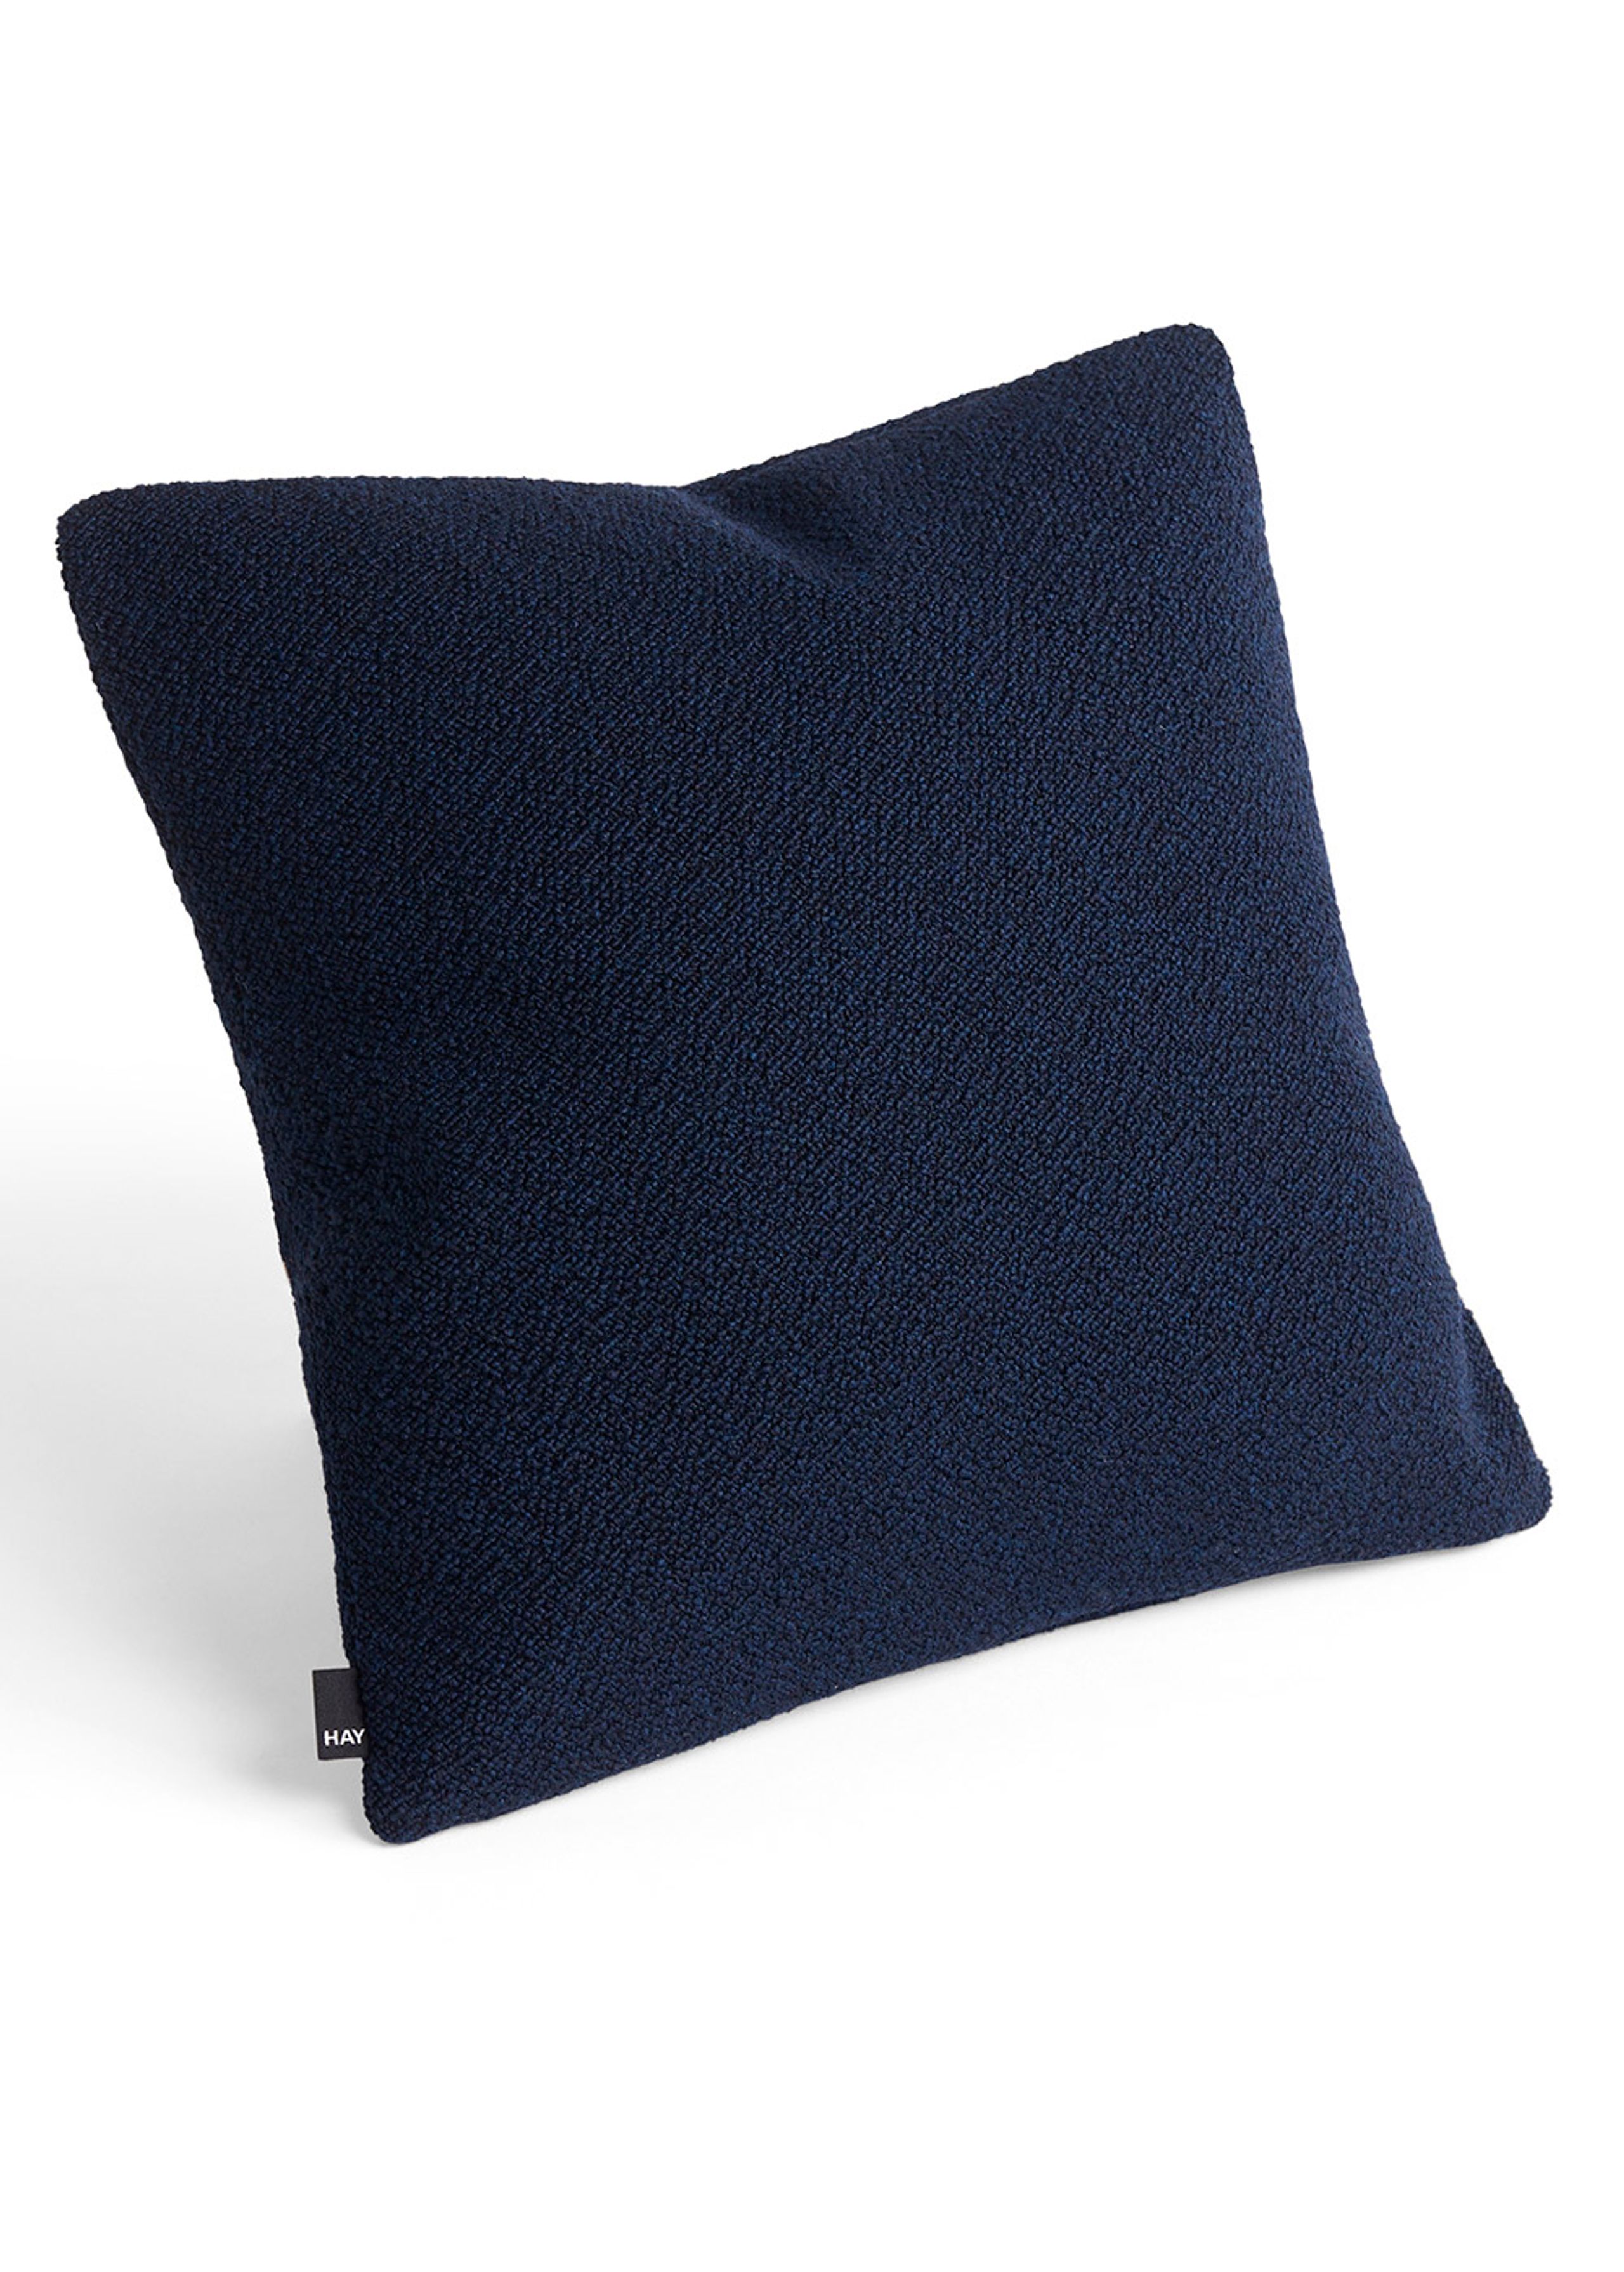 HAY - Pillow - Texture Cushion - Dark Blue